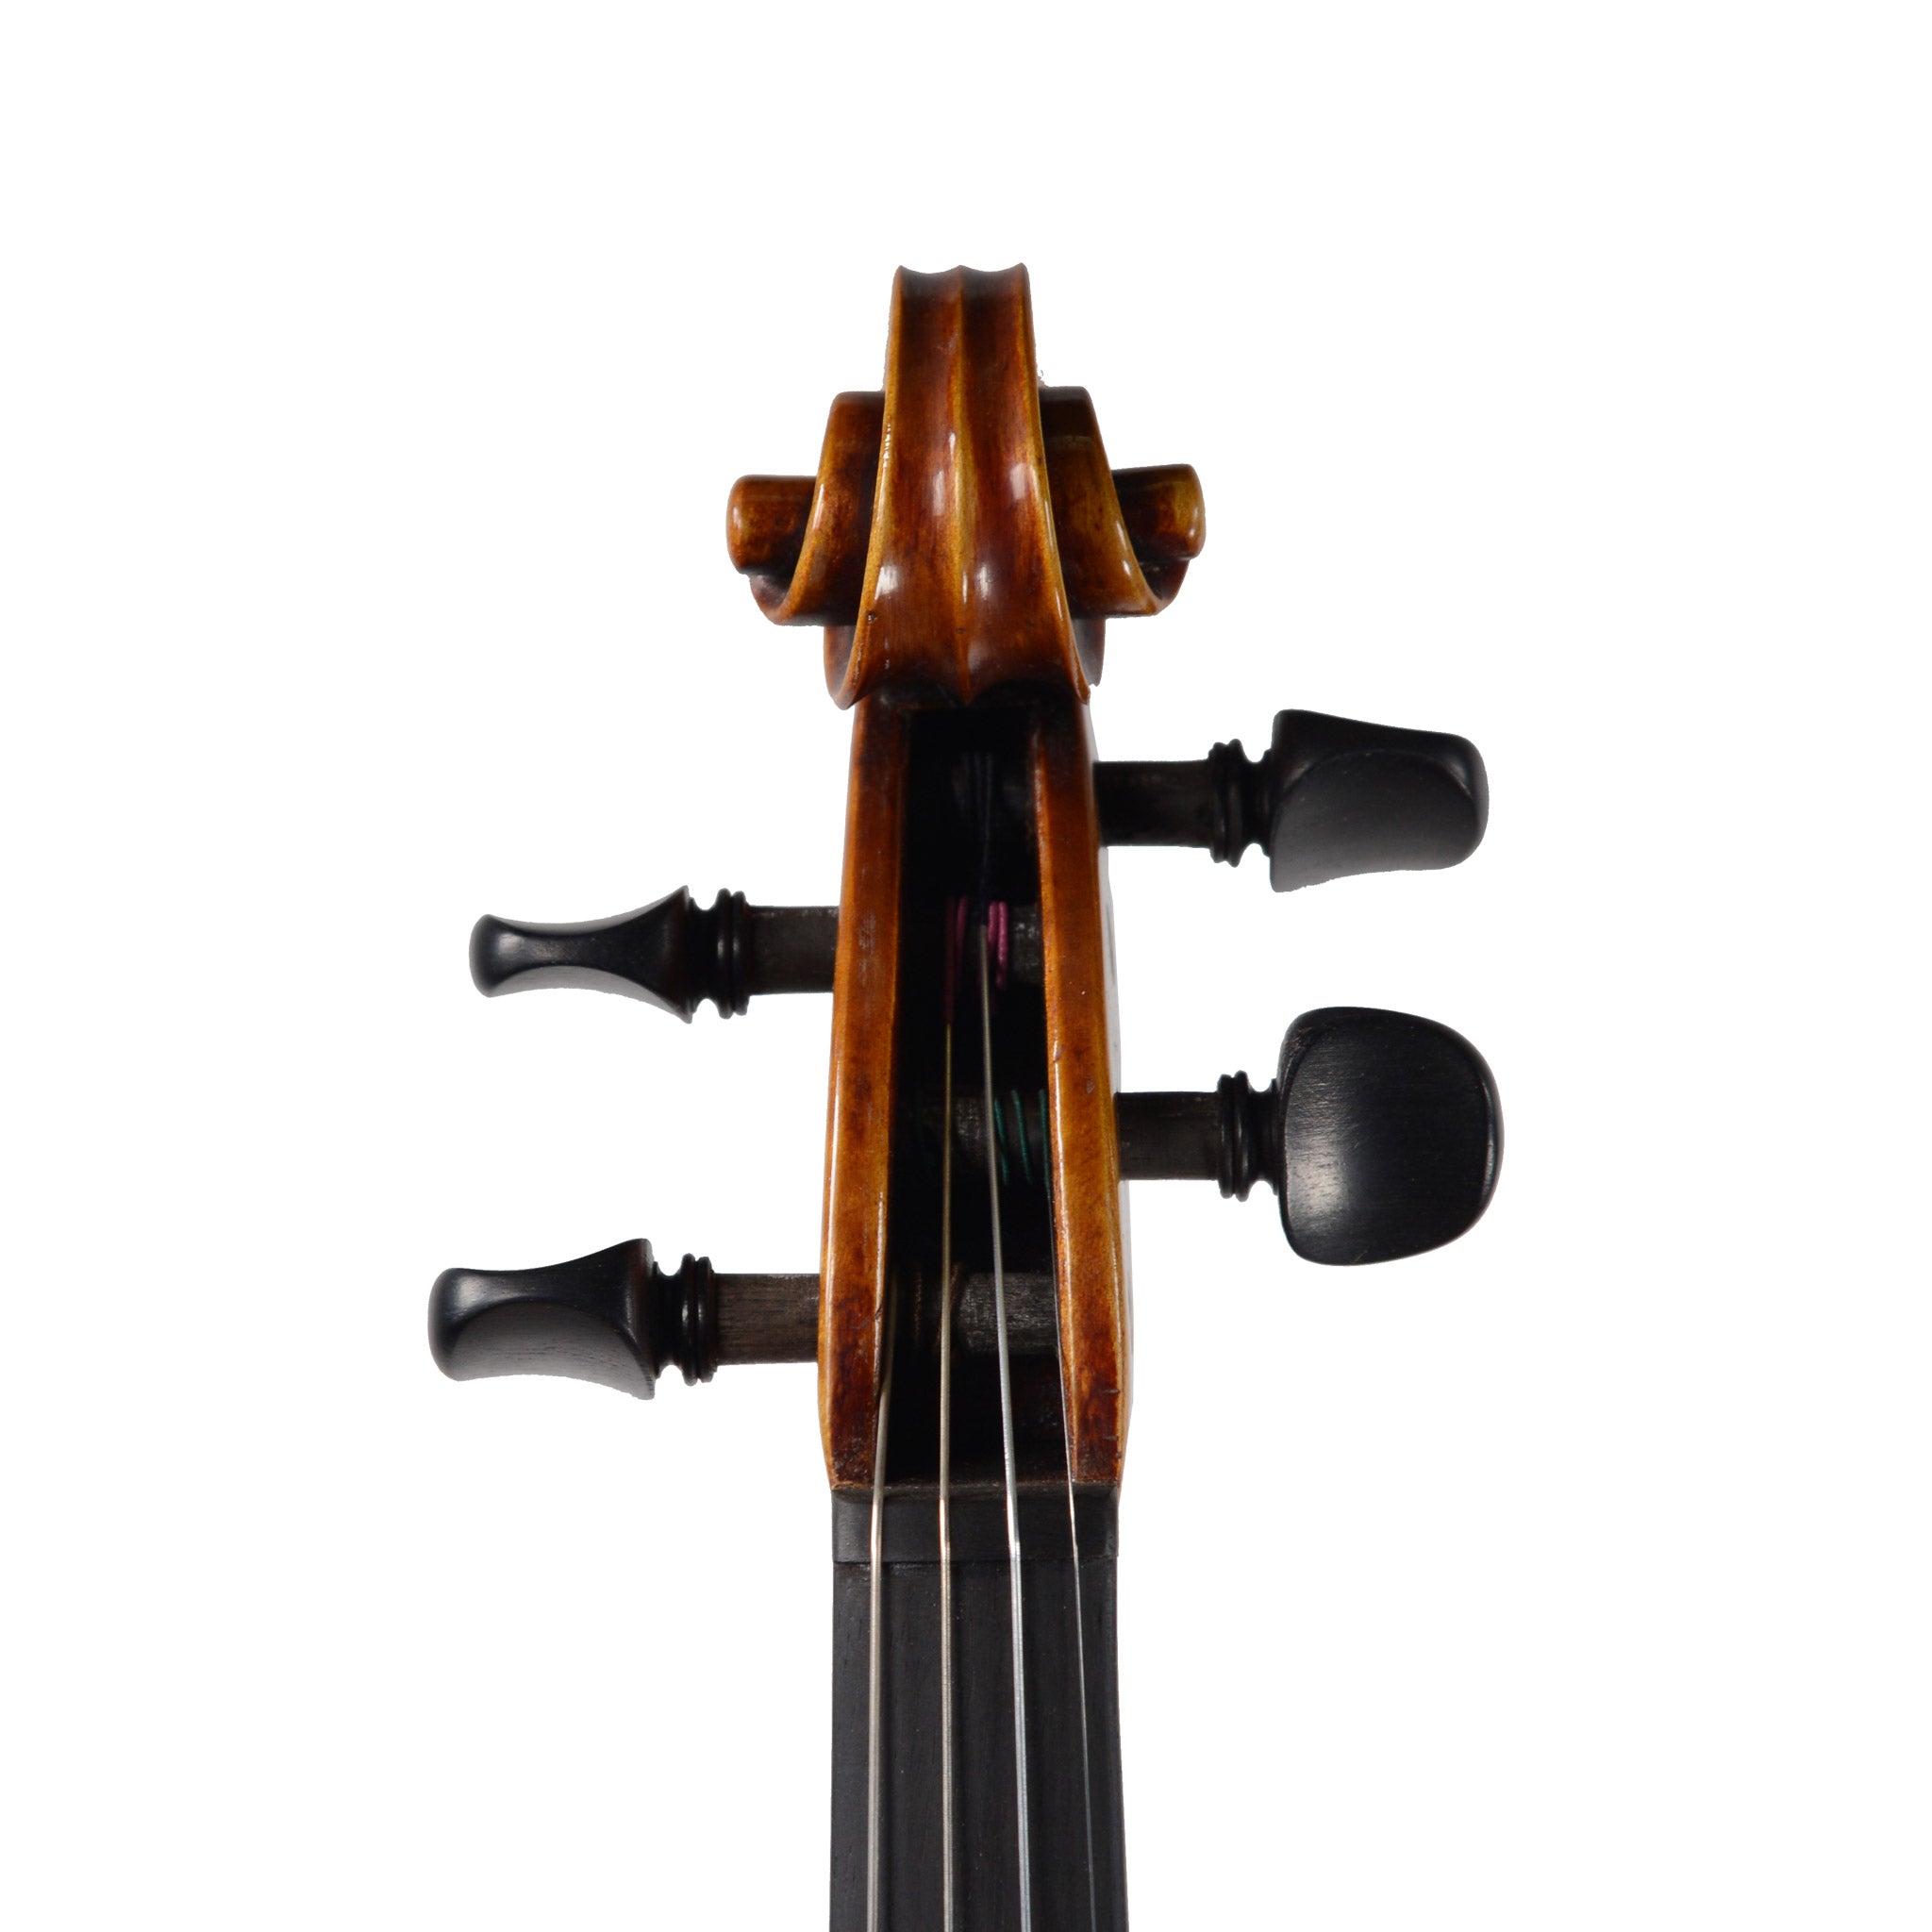 Nicolo Gabrieli 83F Soloist Violin